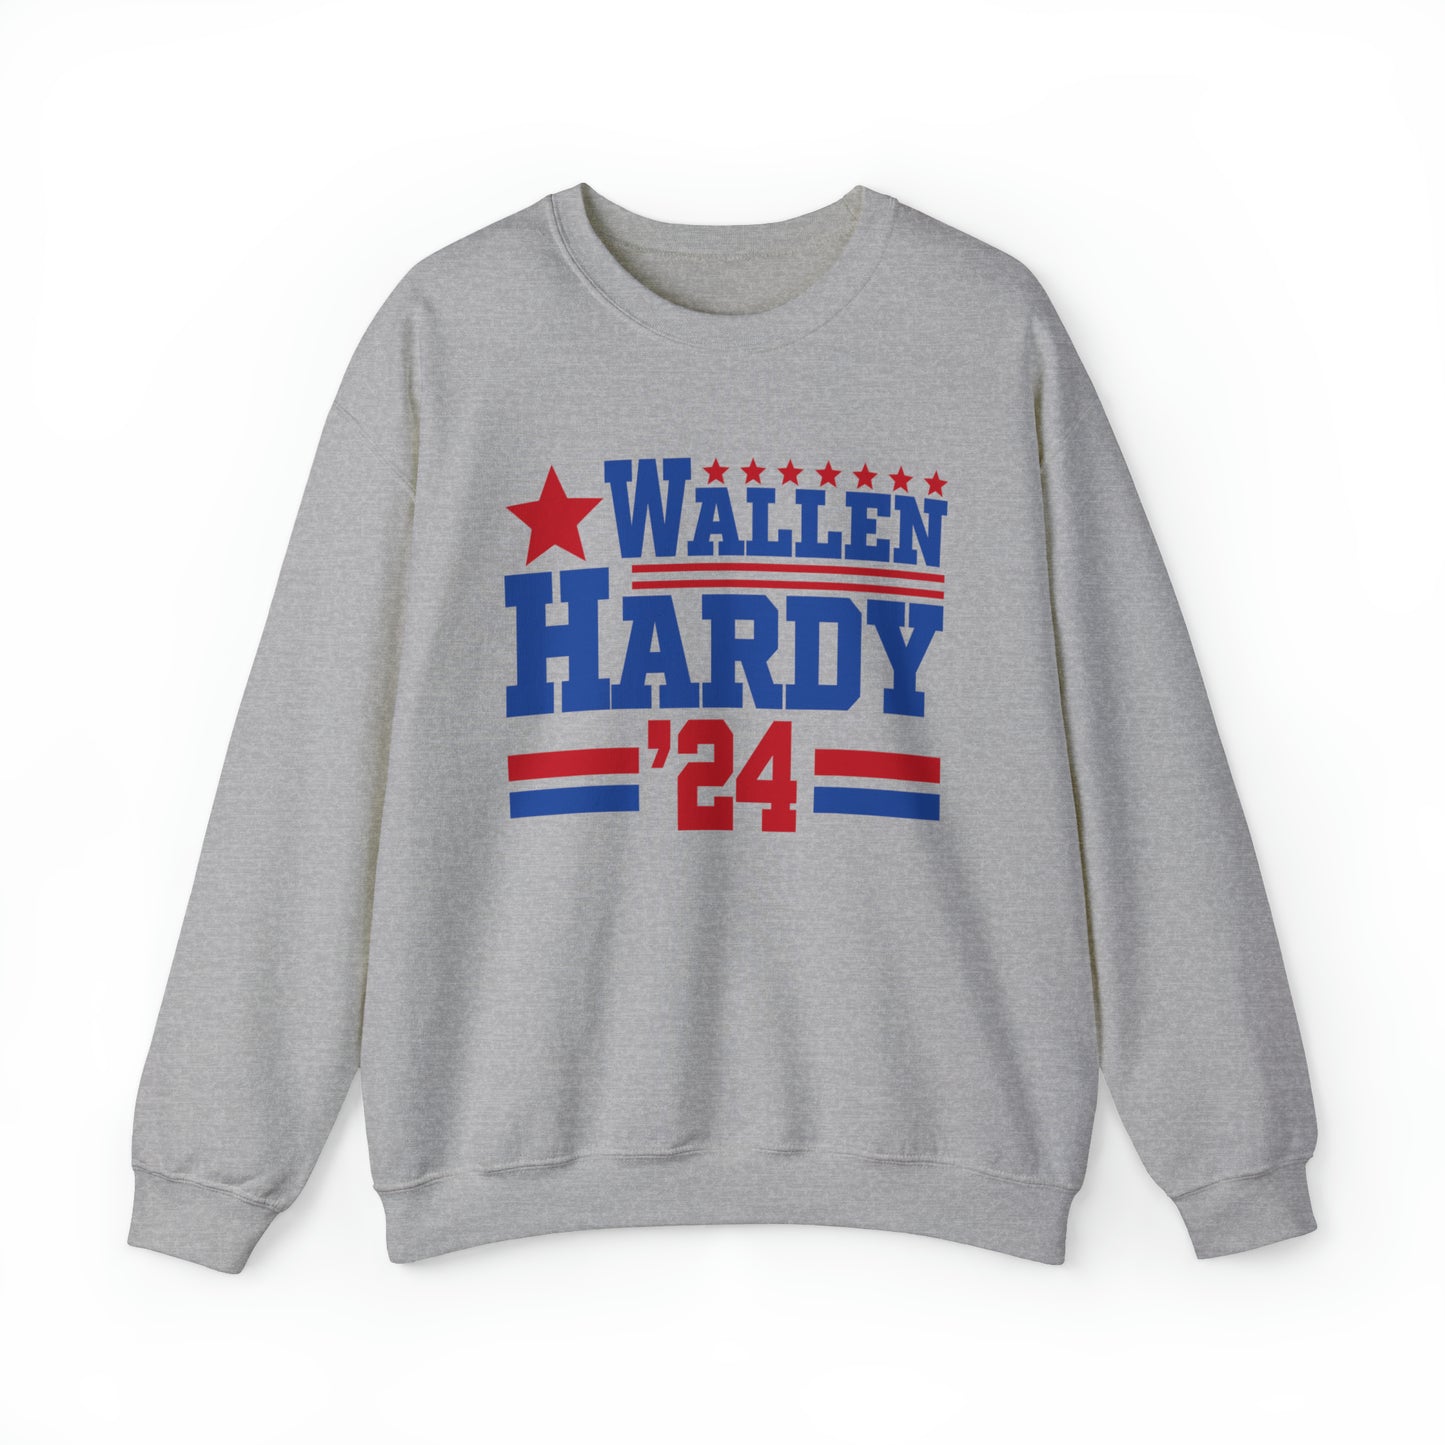 Wallen Hardy 24 Concert Sweatshirt